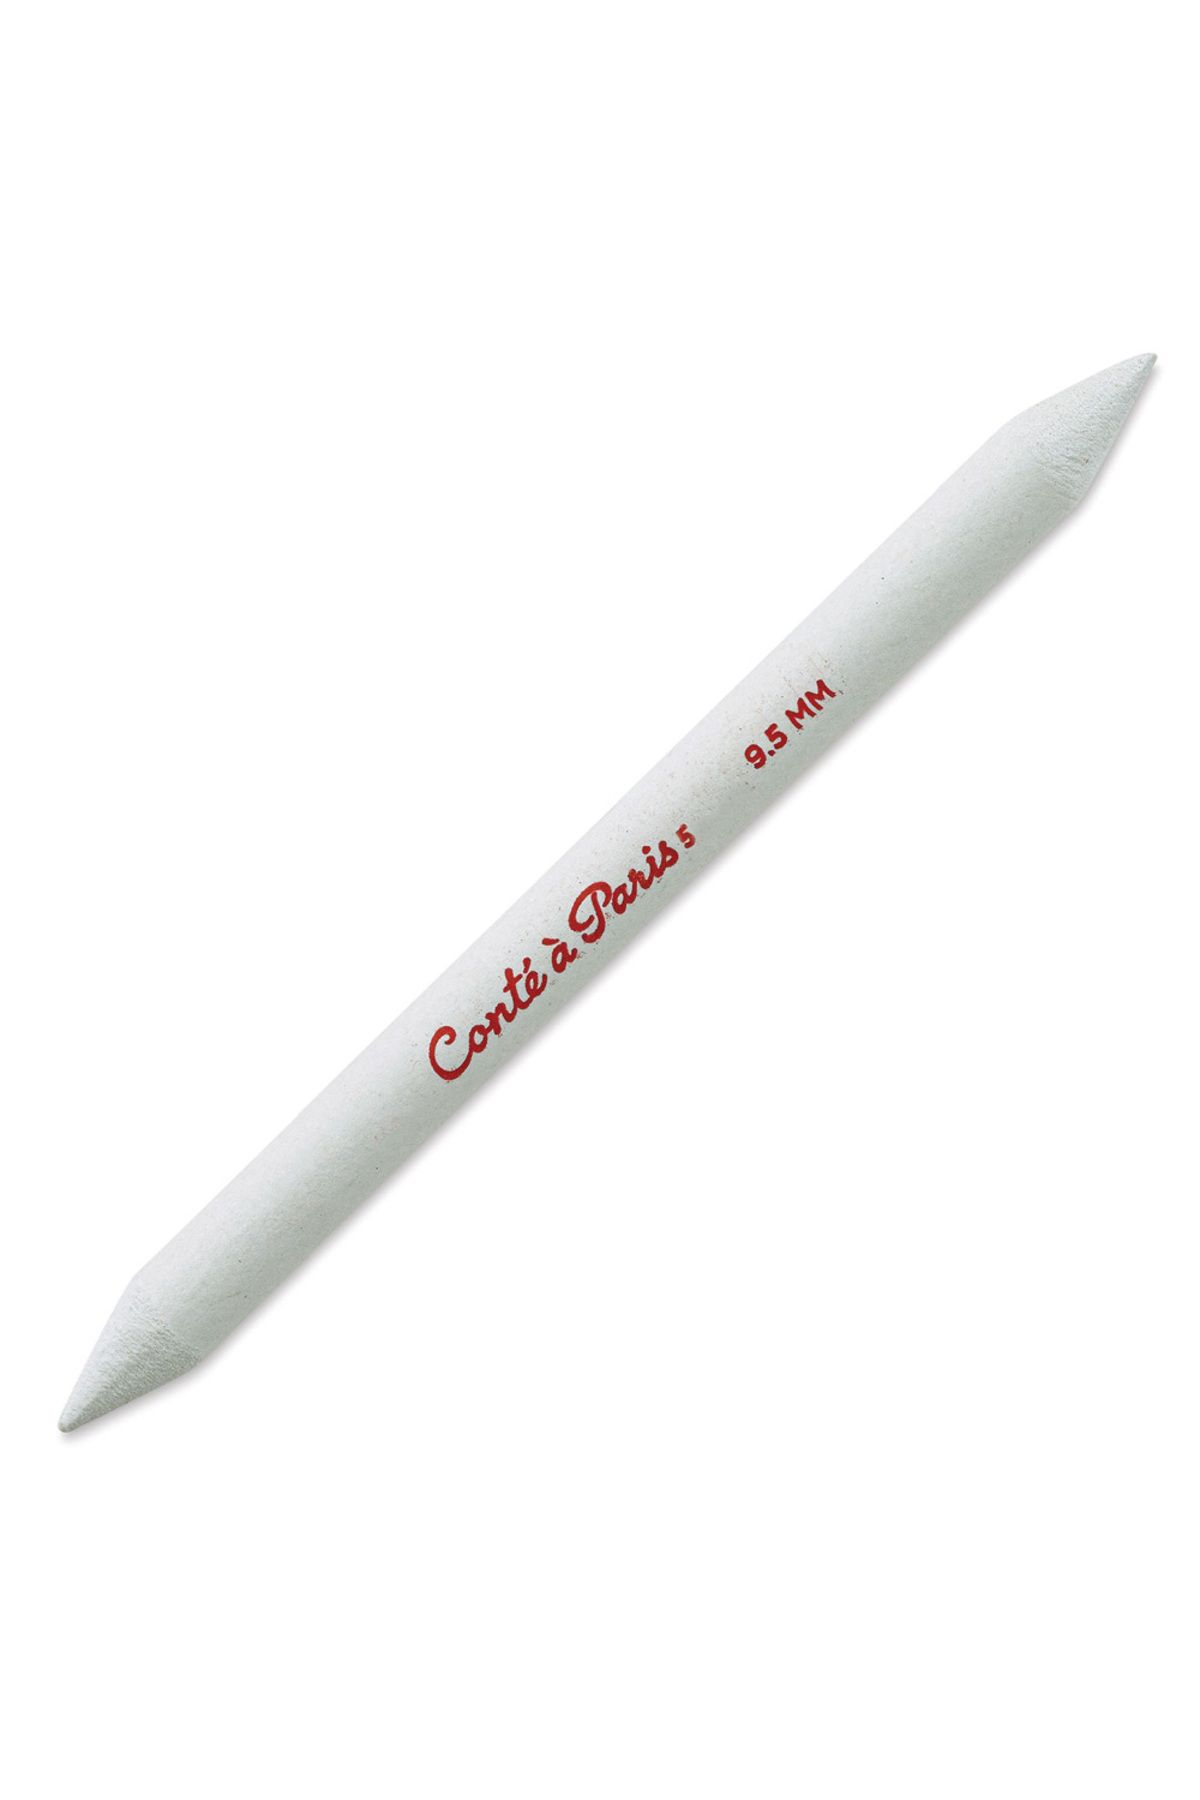 Conte a Paris Yayıcı Kağıt Kalem 135x9,5mm